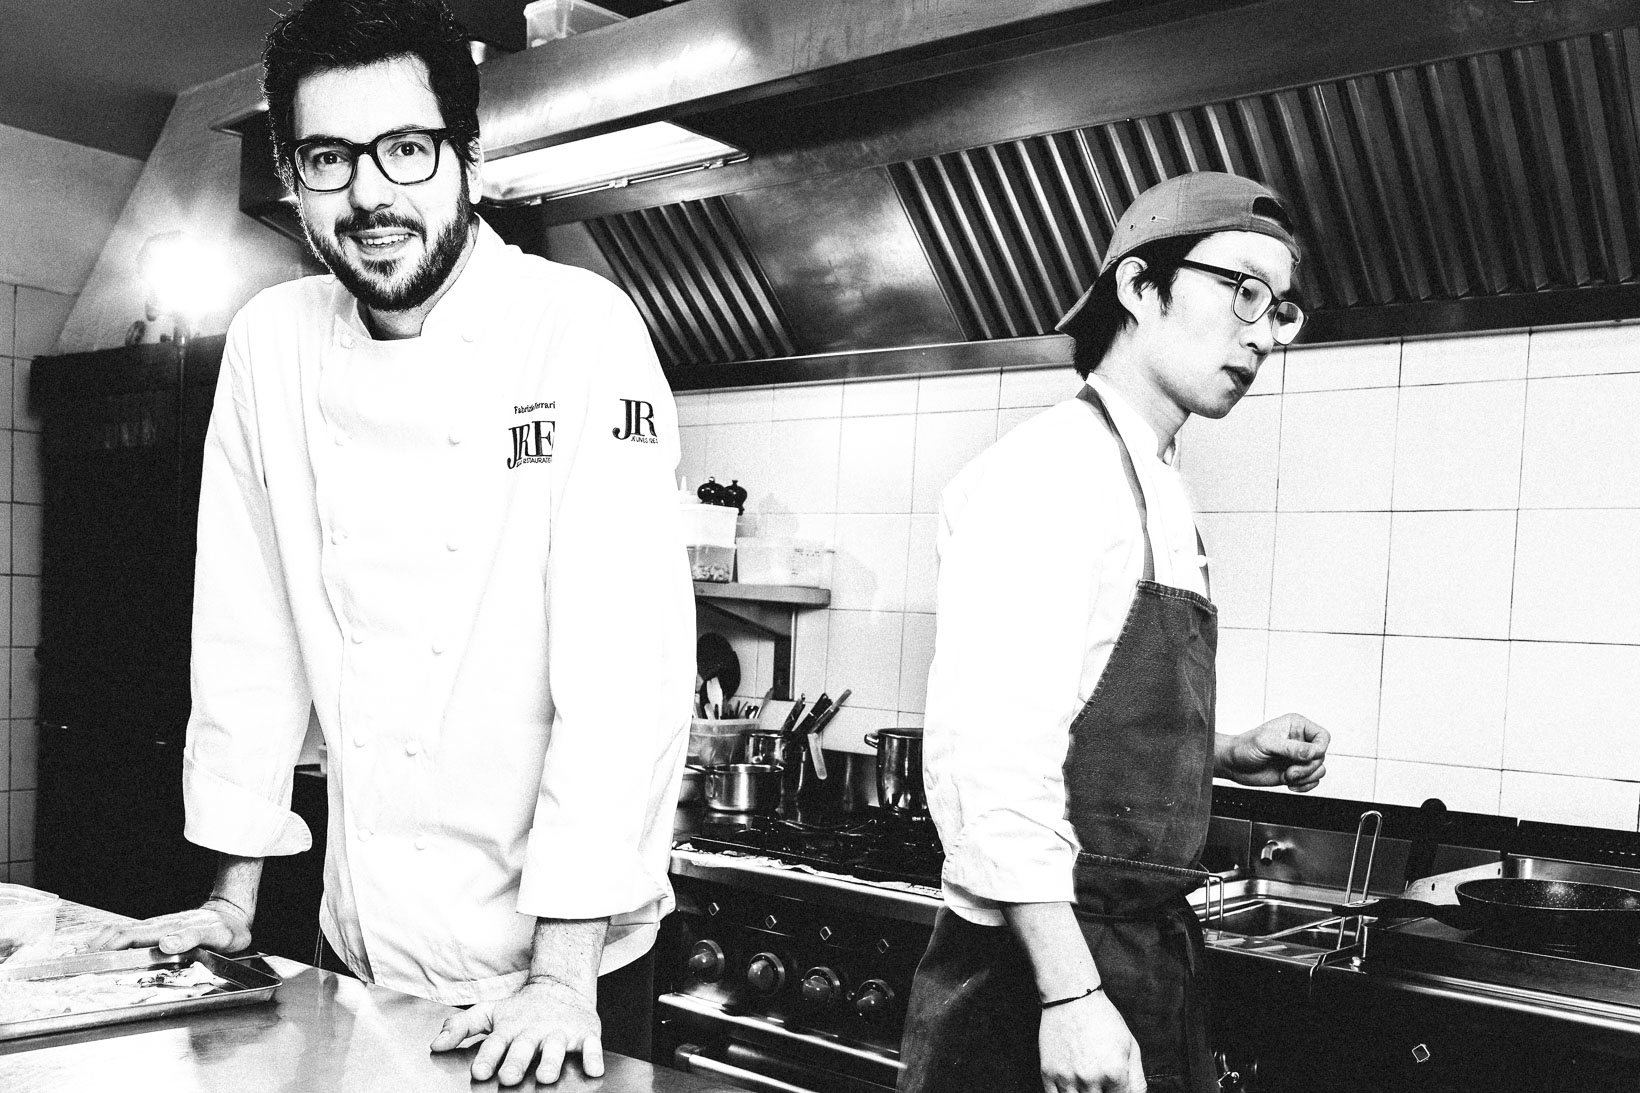 Rui-Lorenzo-Fotografo-food-chef-fabrizio-ferrari-ristorante-al-porticciolo-84-lecco-jre-_RUI0032_web